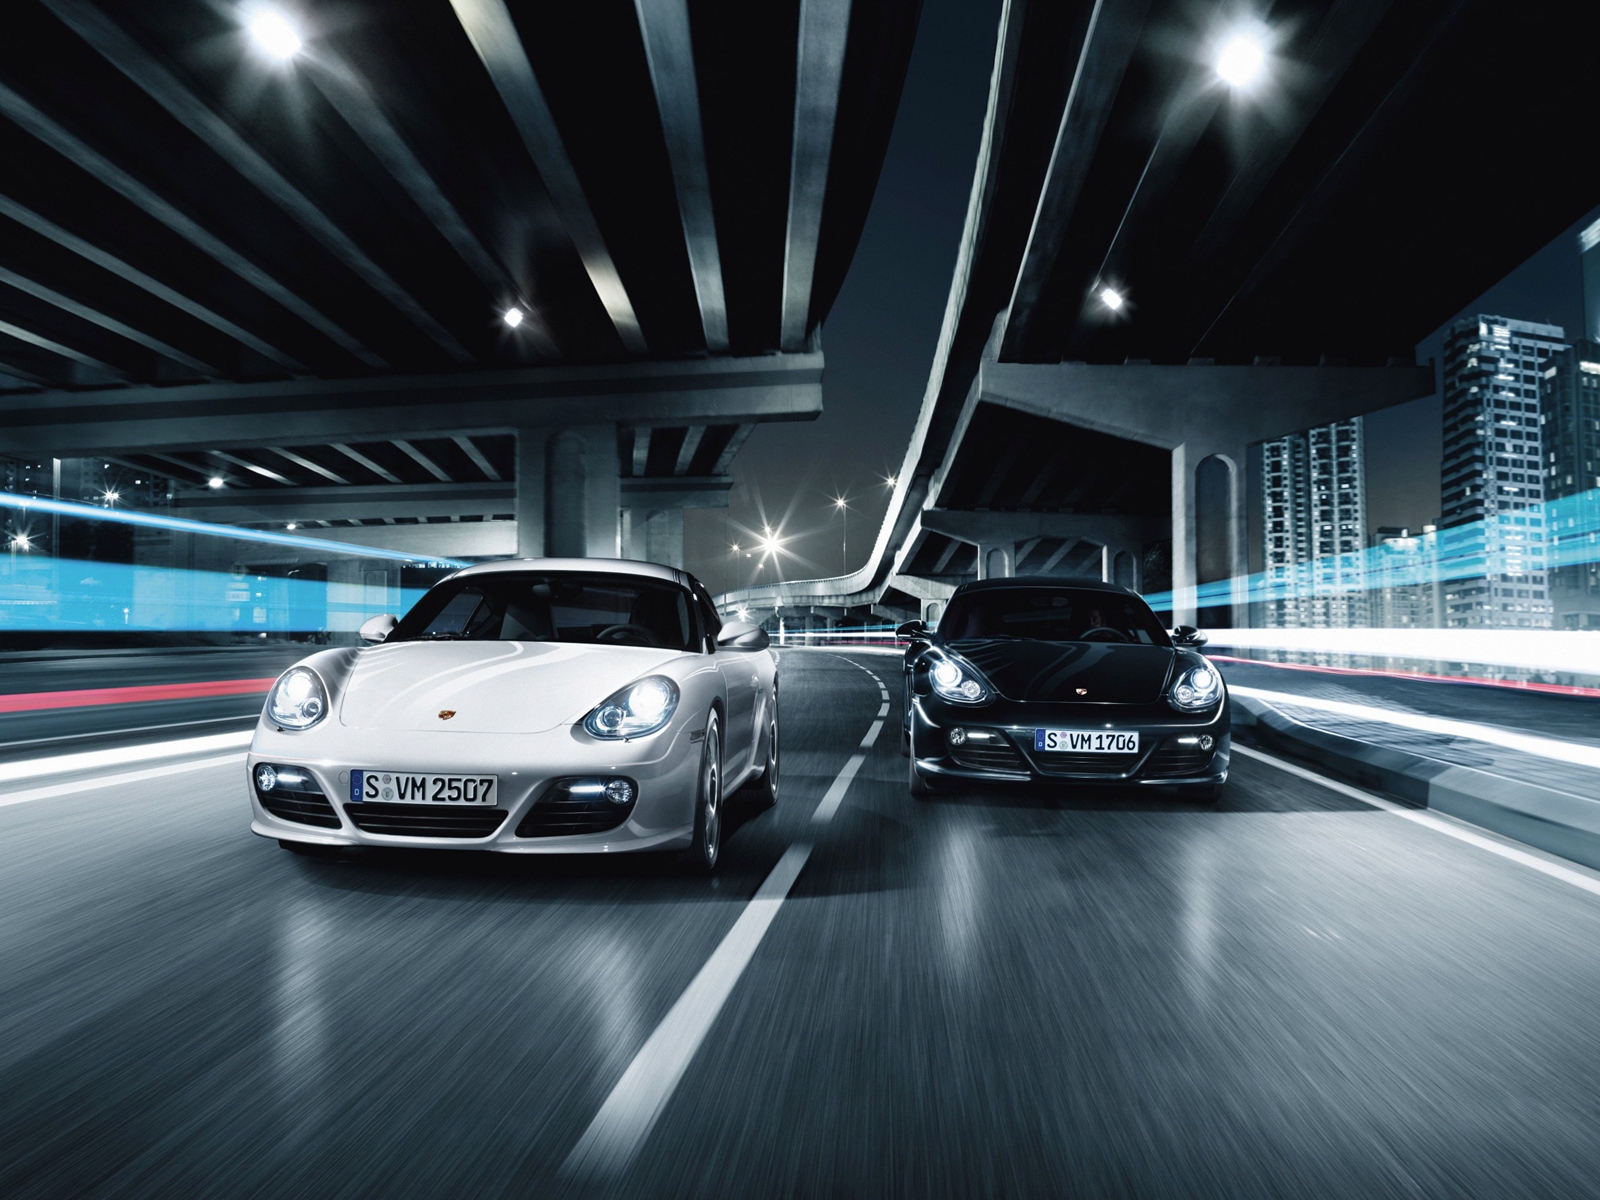 Porsche 911 GT2 Race for 1600 x 1200 resolution